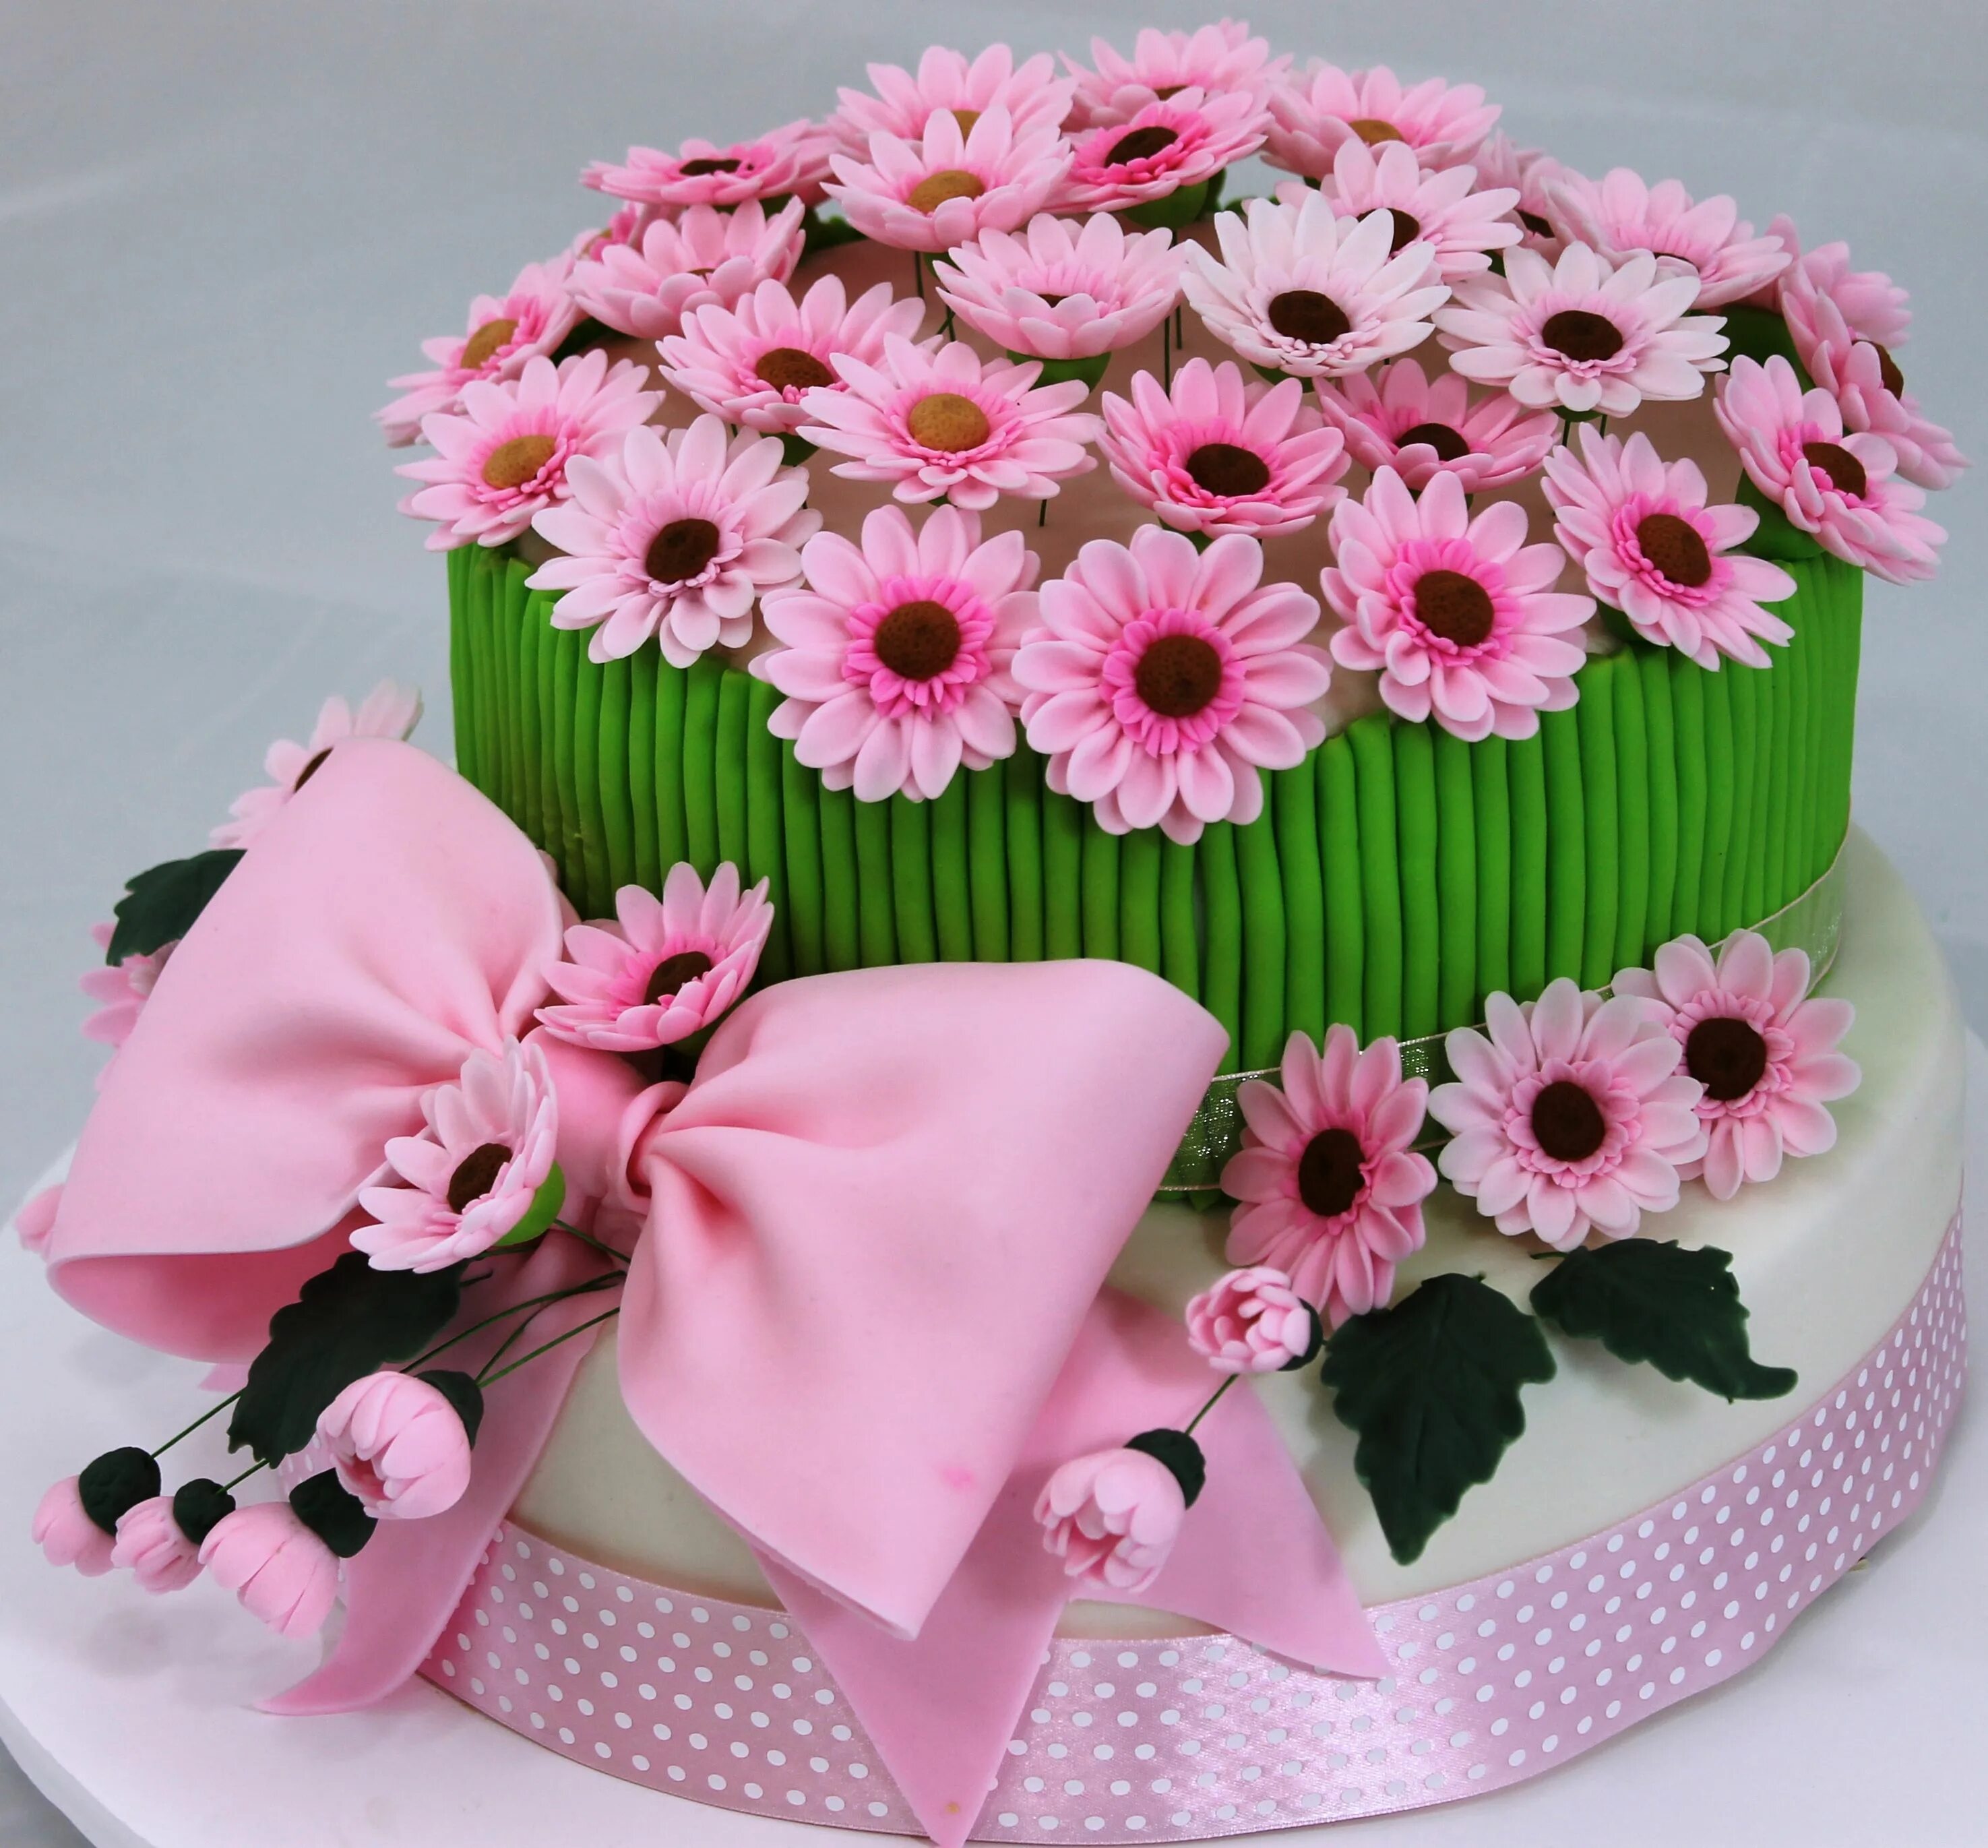 День рождения женщине в домашних условиях. Красивые торты на день рождения. Торт цветы. Красивые торты с цветами. Торт с днем рождения!.